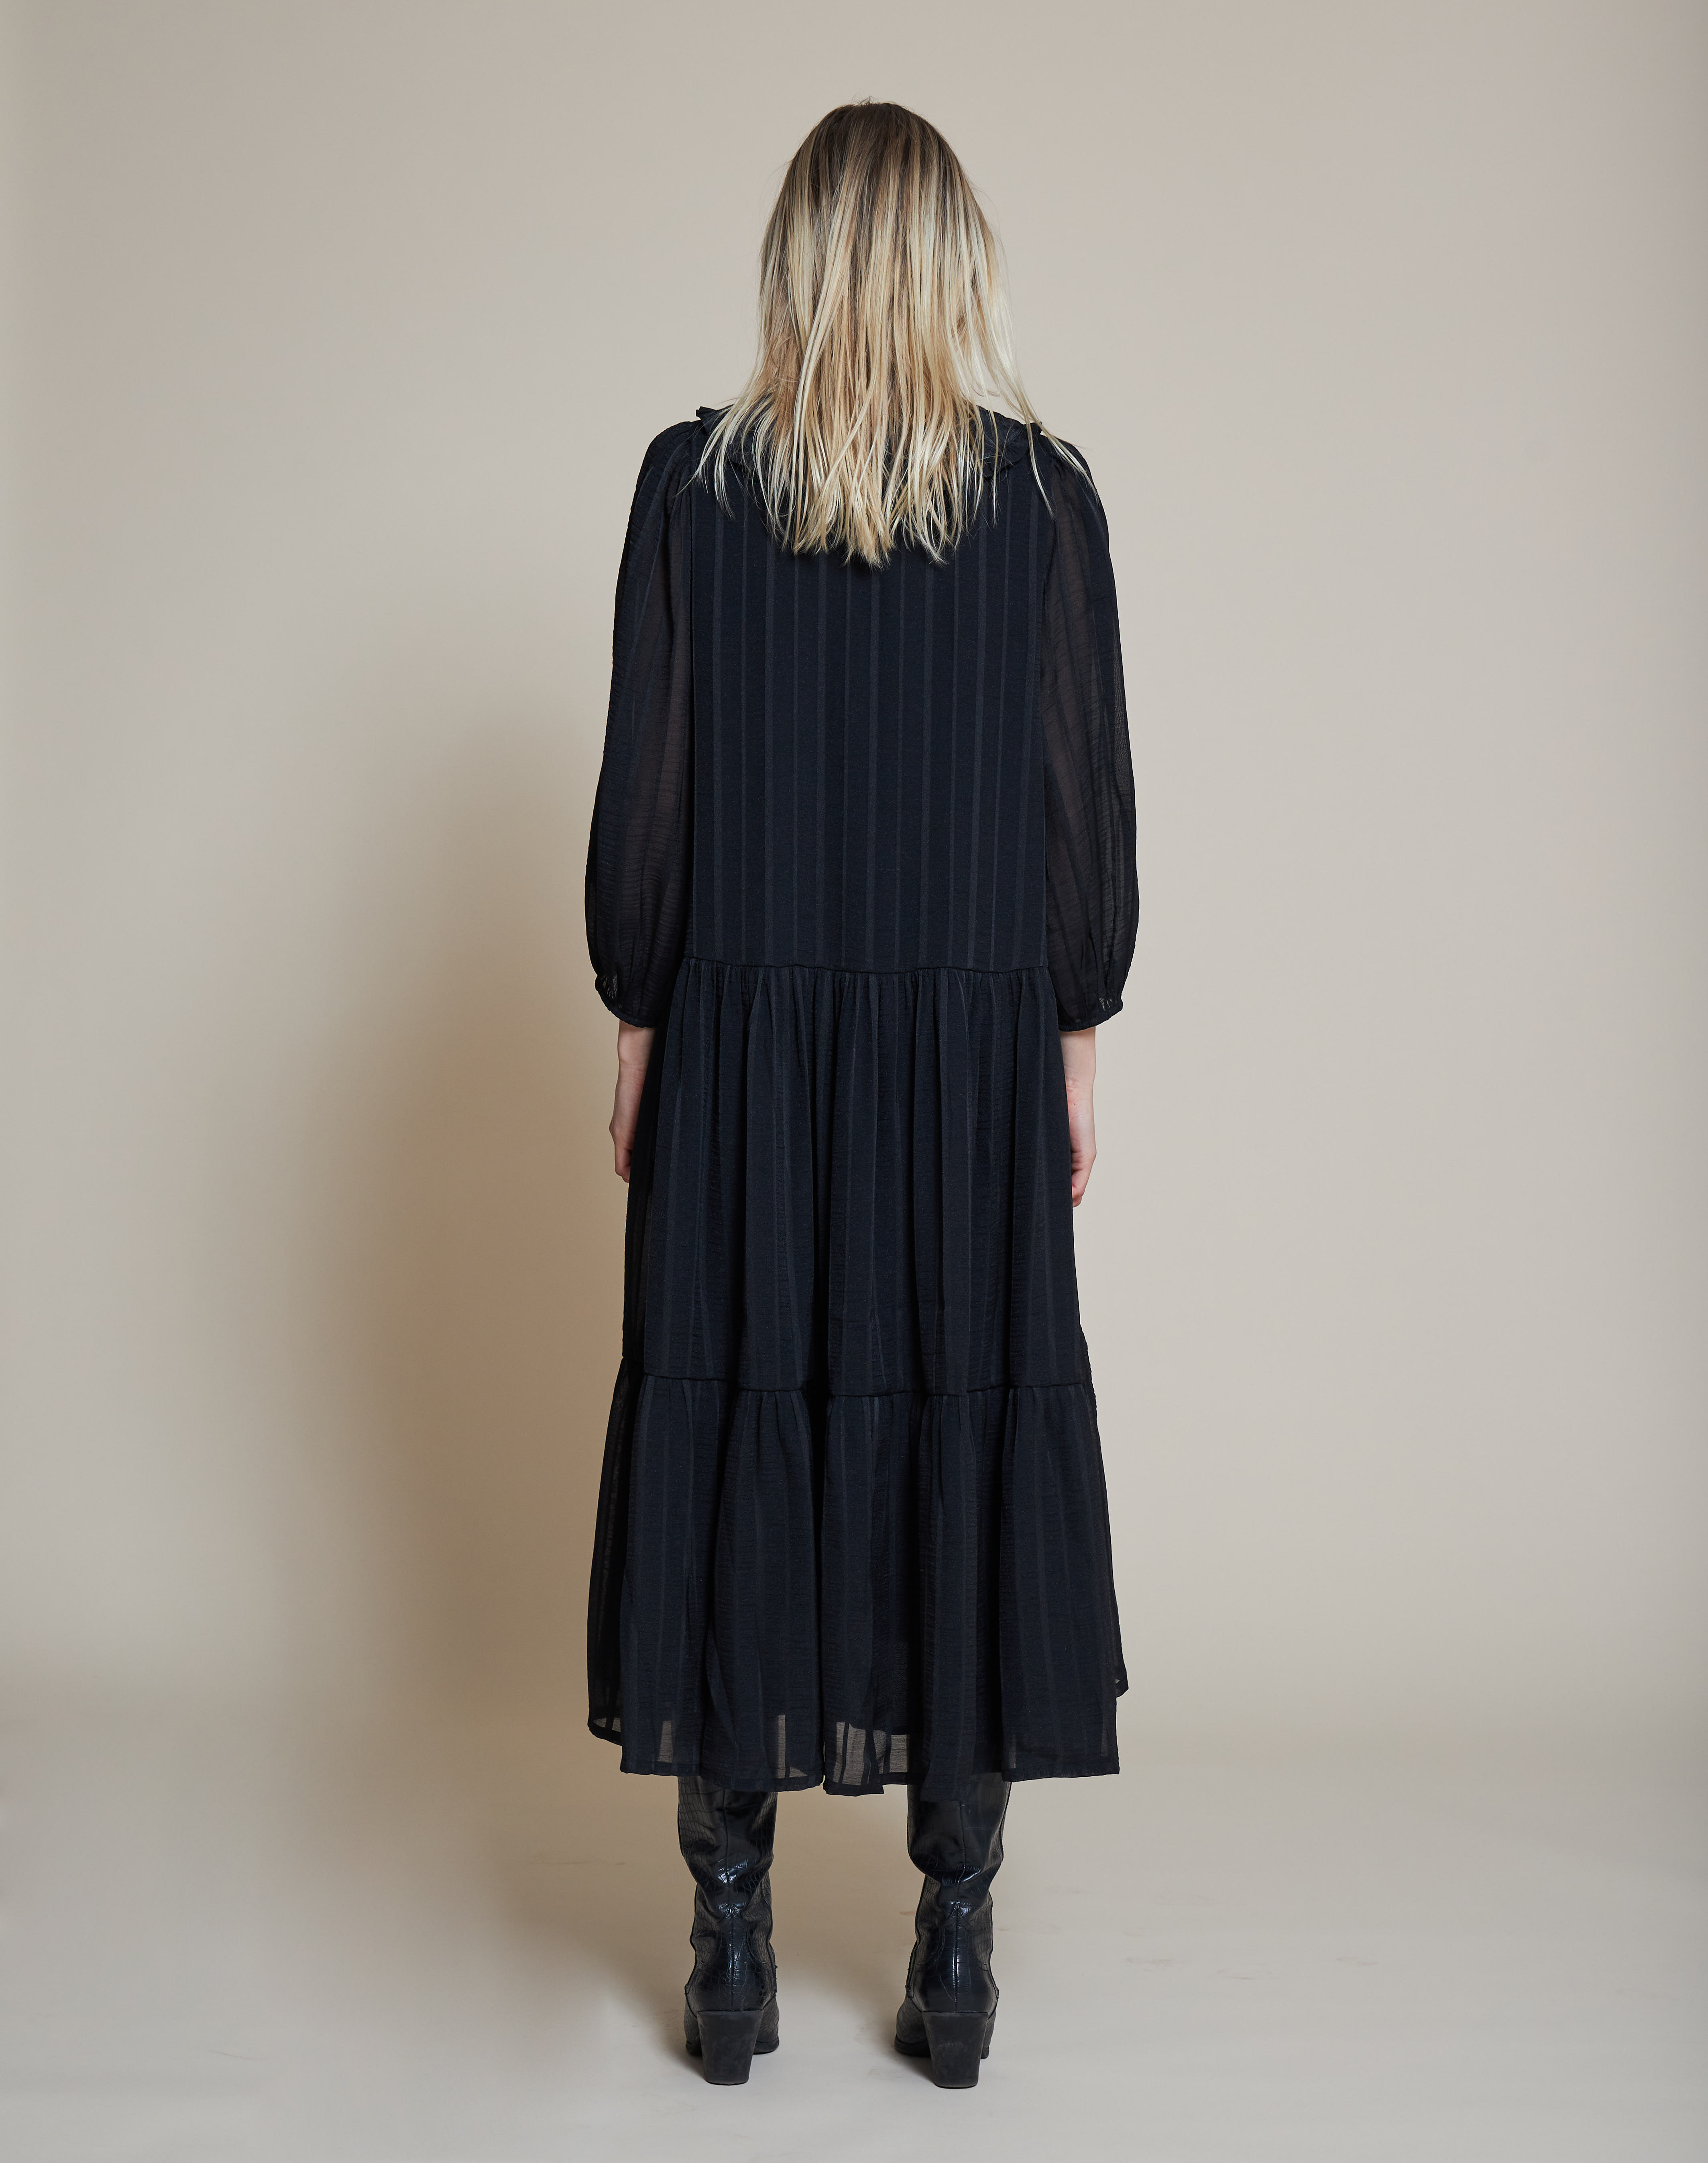 yopRU Odzież Stella Nova Sukienka koszulowa Nimi w kolorze Czarnym 